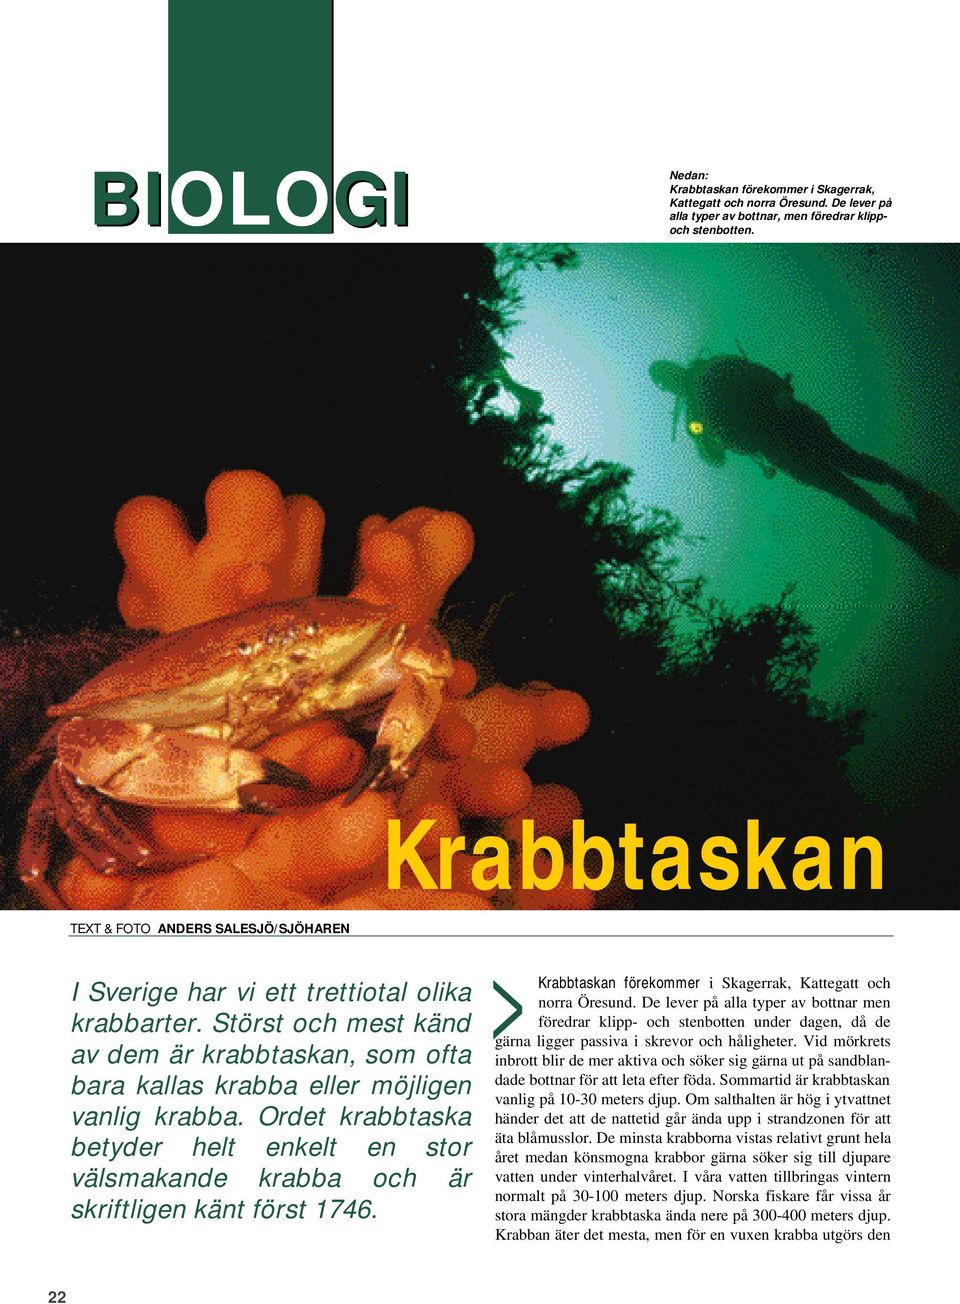 Ordet krabbtaska betyder helt enkelt en stor välsmakande krabba och är skriftligen känt först 1746. Krabbtaskan förekommer i Skagerrak, Kattegatt och norra Öresund.